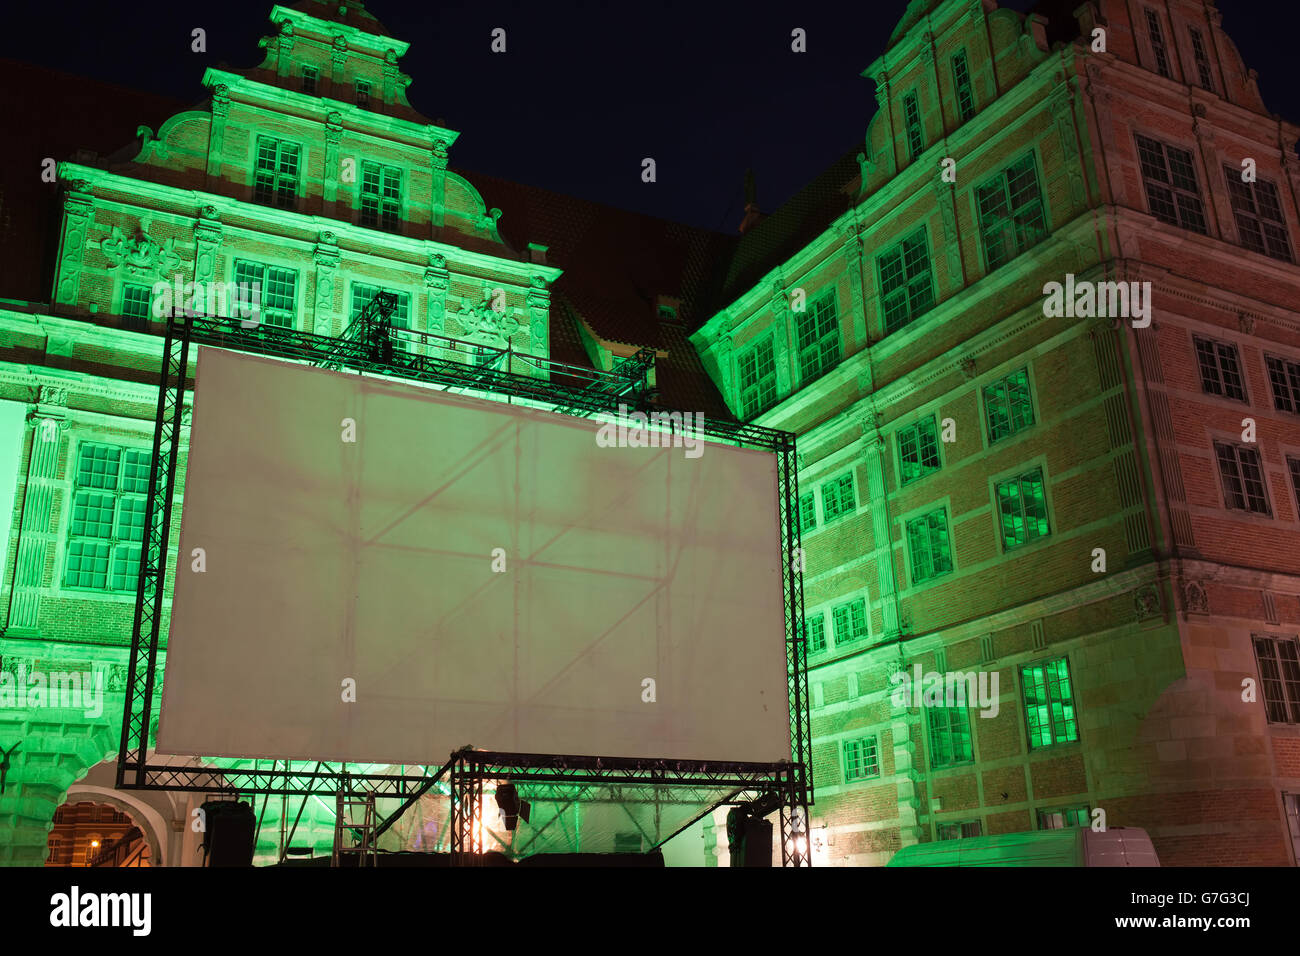 Grande piscine en plein air, écran projecteur affichage vide prêt pour la projection de nuit, illuminé porte verte, vieille ville de Gdansk, P Banque D'Images